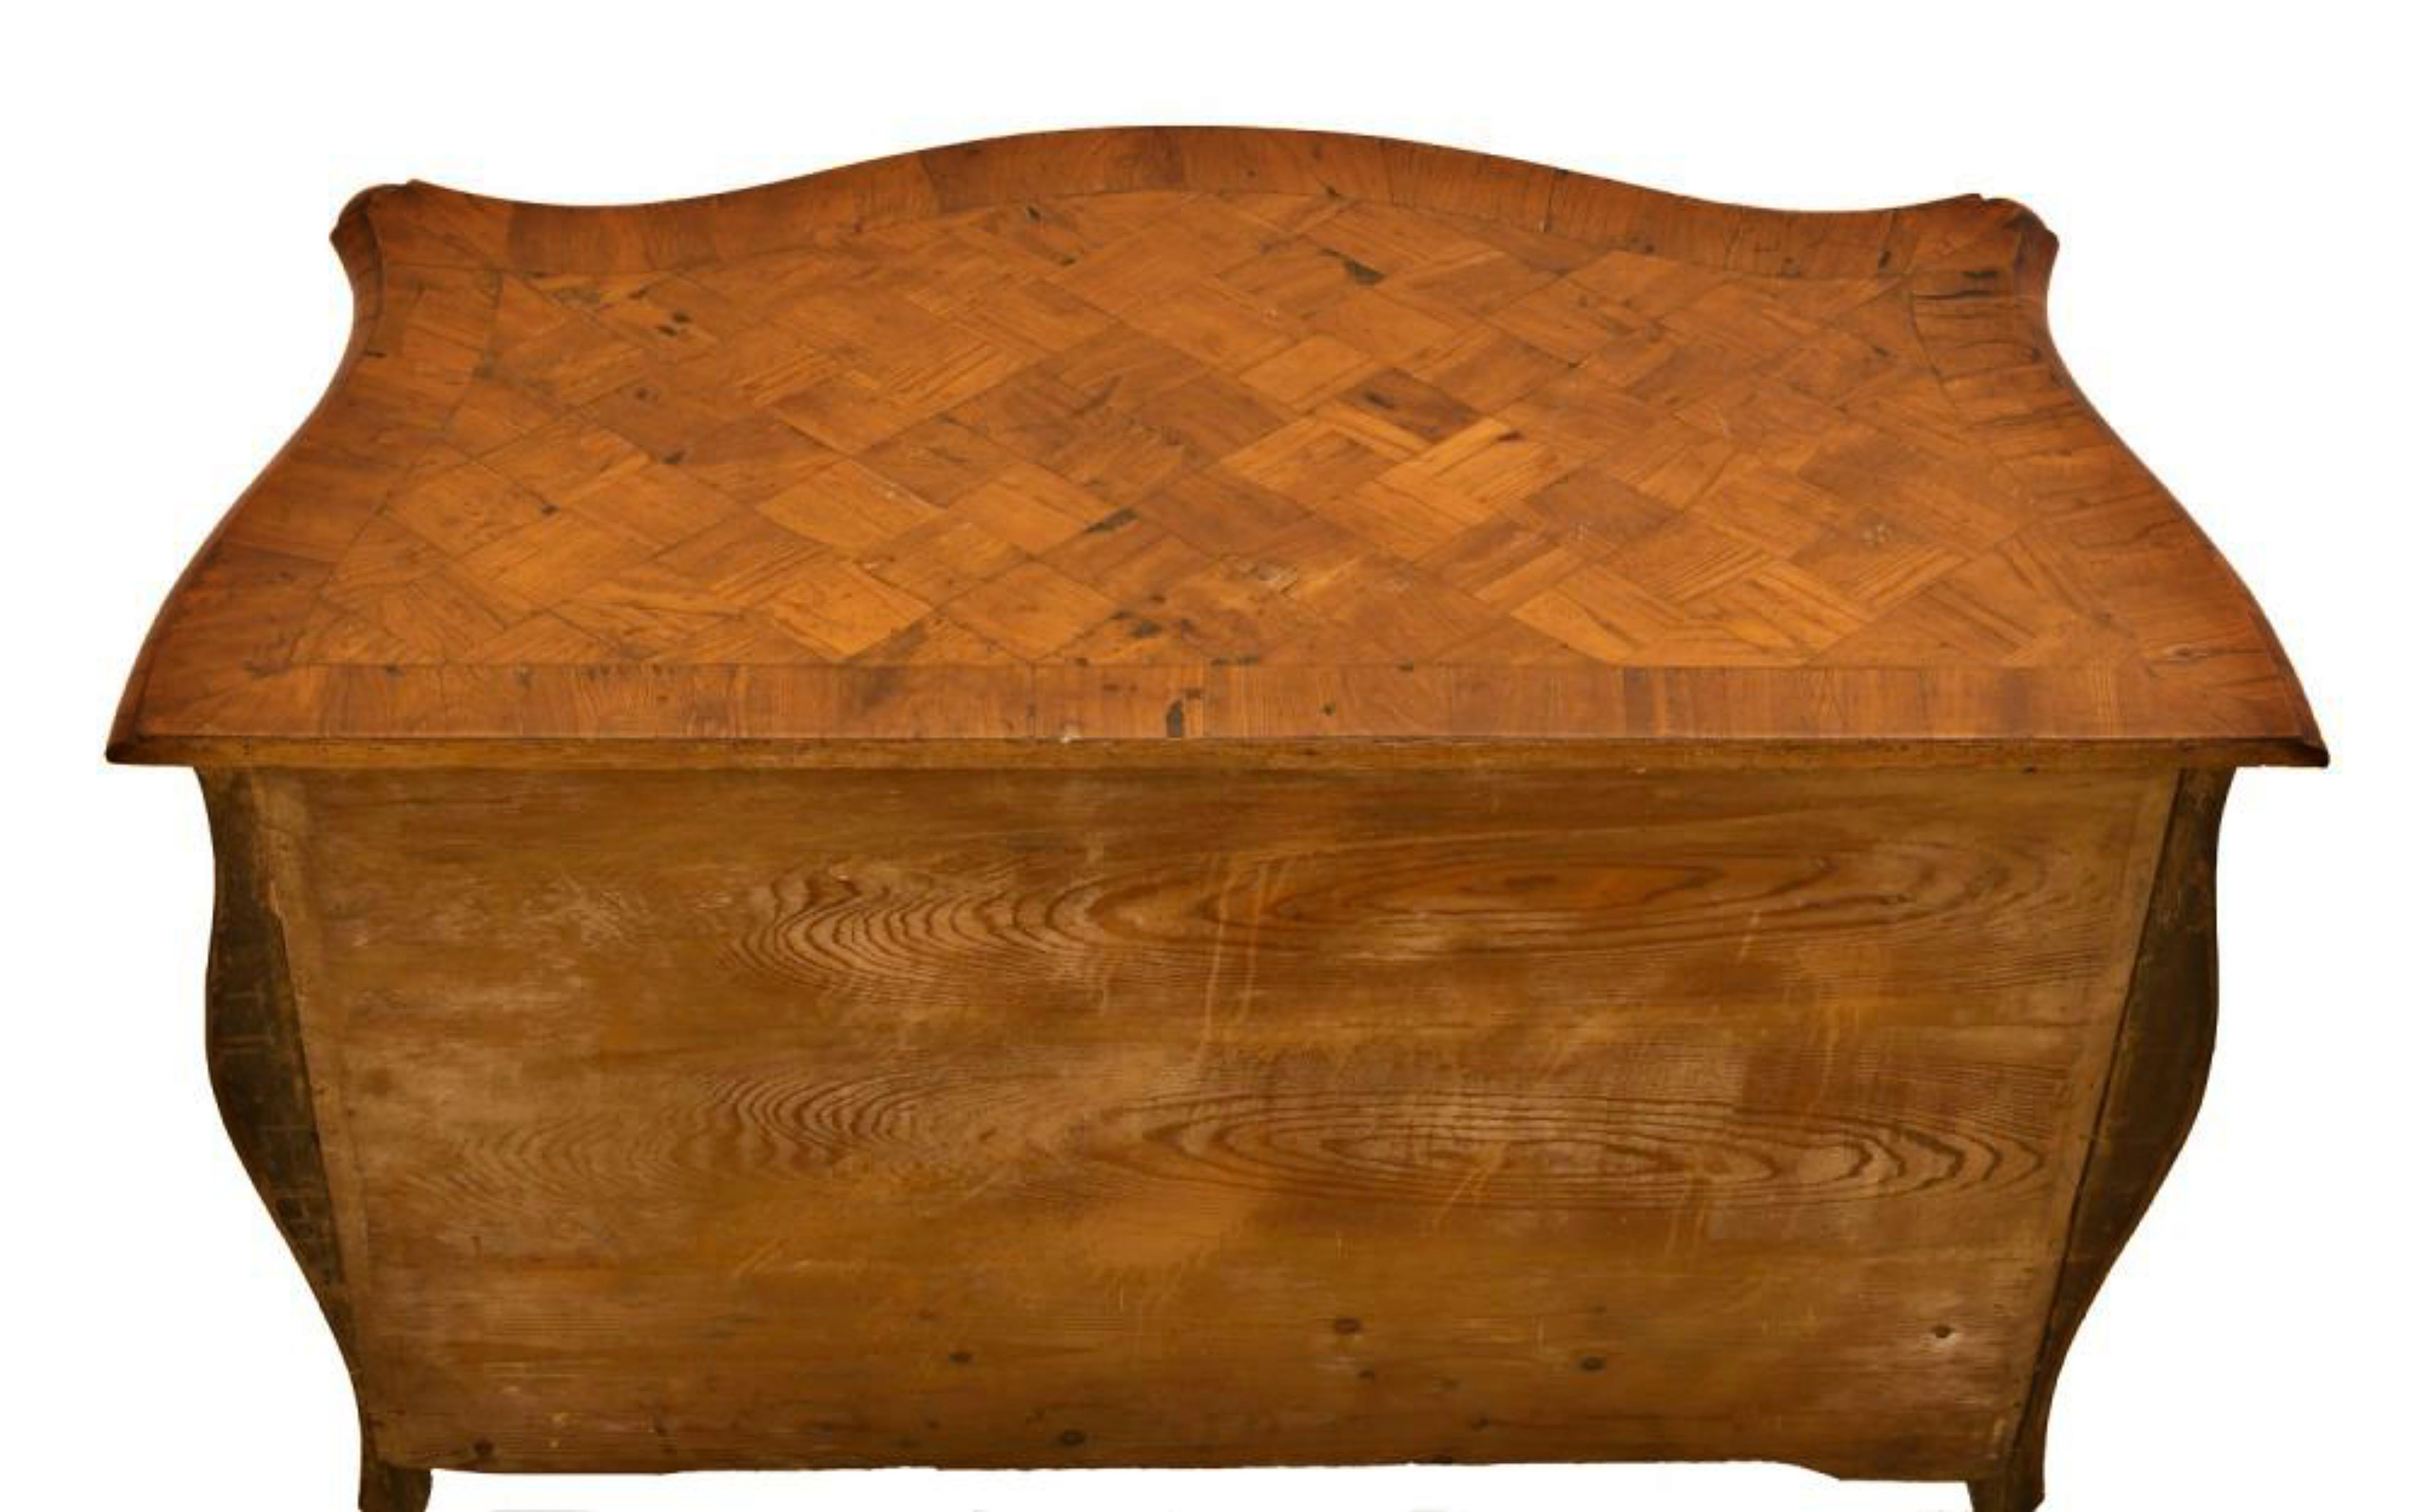 Commode française Louis XV fin XVIIIe siècle
déplacé plaqué d'incrustations géométriques avec trois tiroirs
France
Dimensions :
cm 80x103x53
Front et hanches ondulés.
Enrichi d'éléments en bronze doré sur le côté, sur le trou de la serrure, les